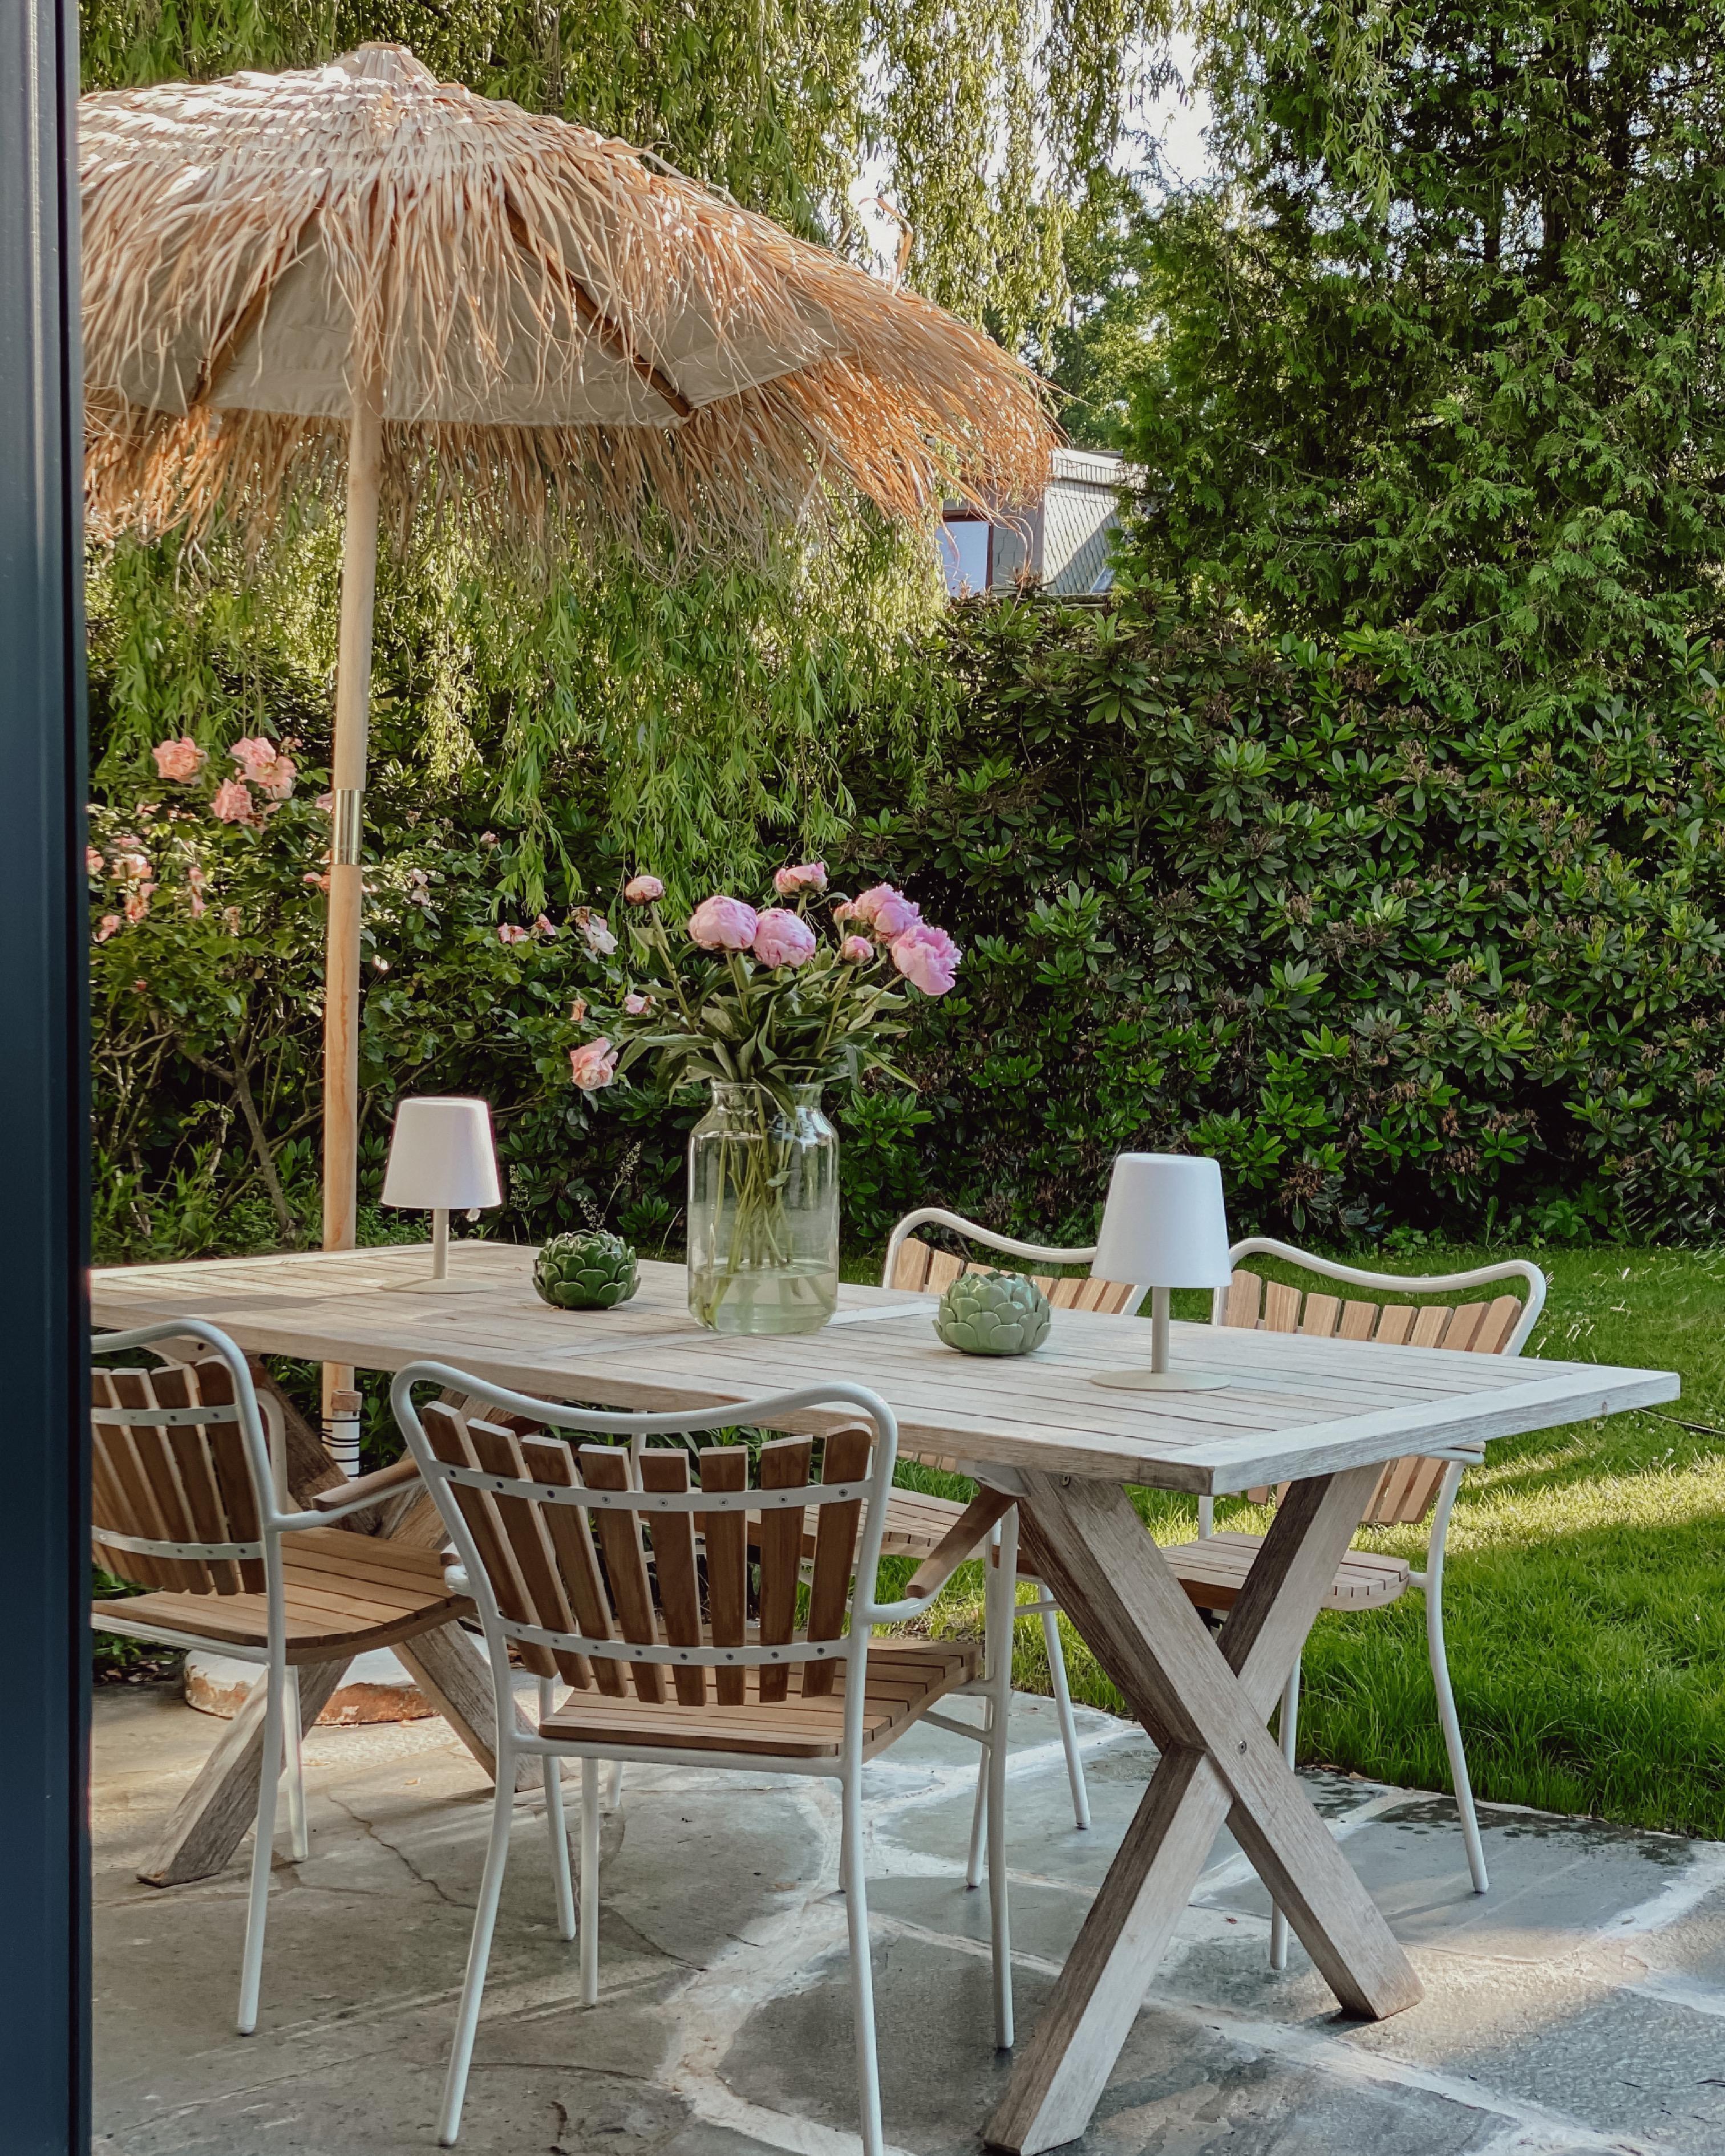 #terrasse #garten #outdoormöbel #summer #stühle #esstisch #sonnenschirm 